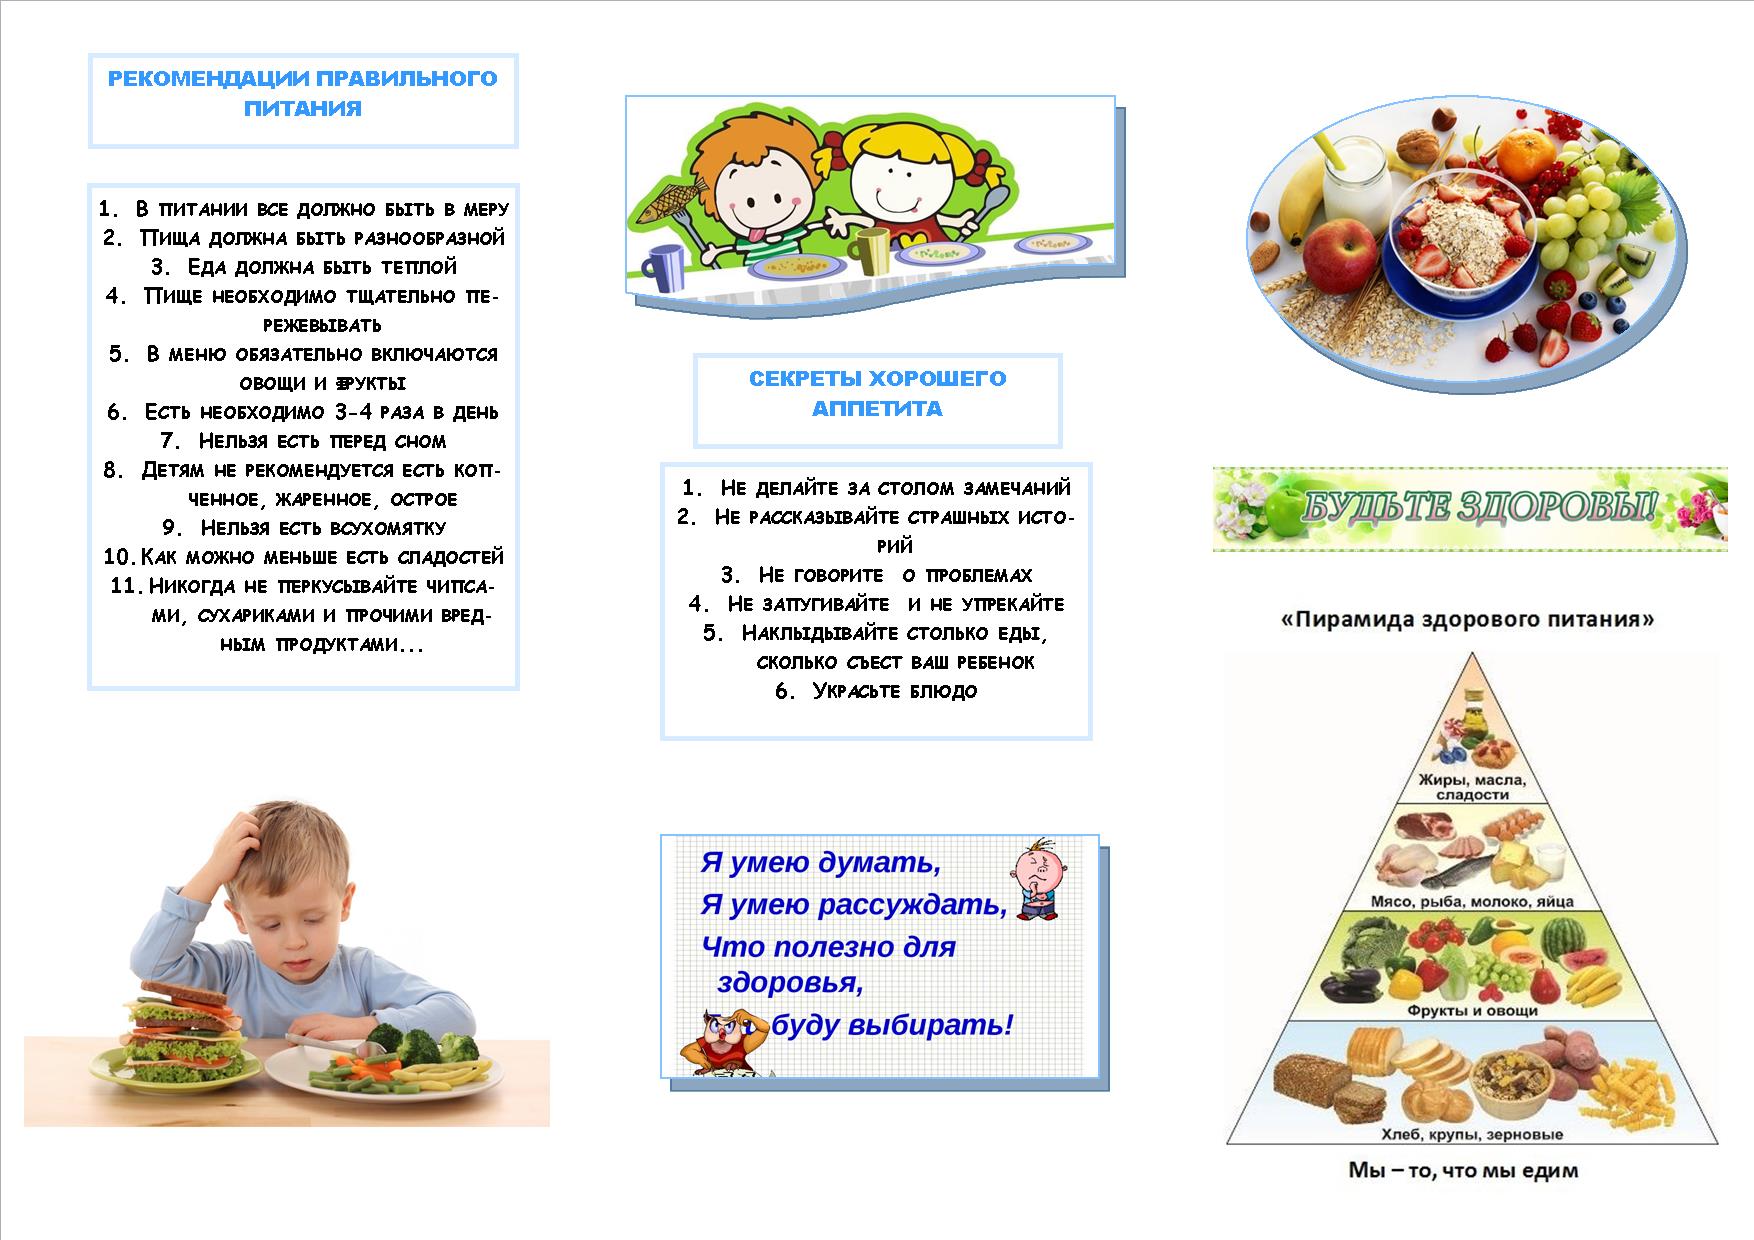 Семь обязательных принципов здорового питания детей